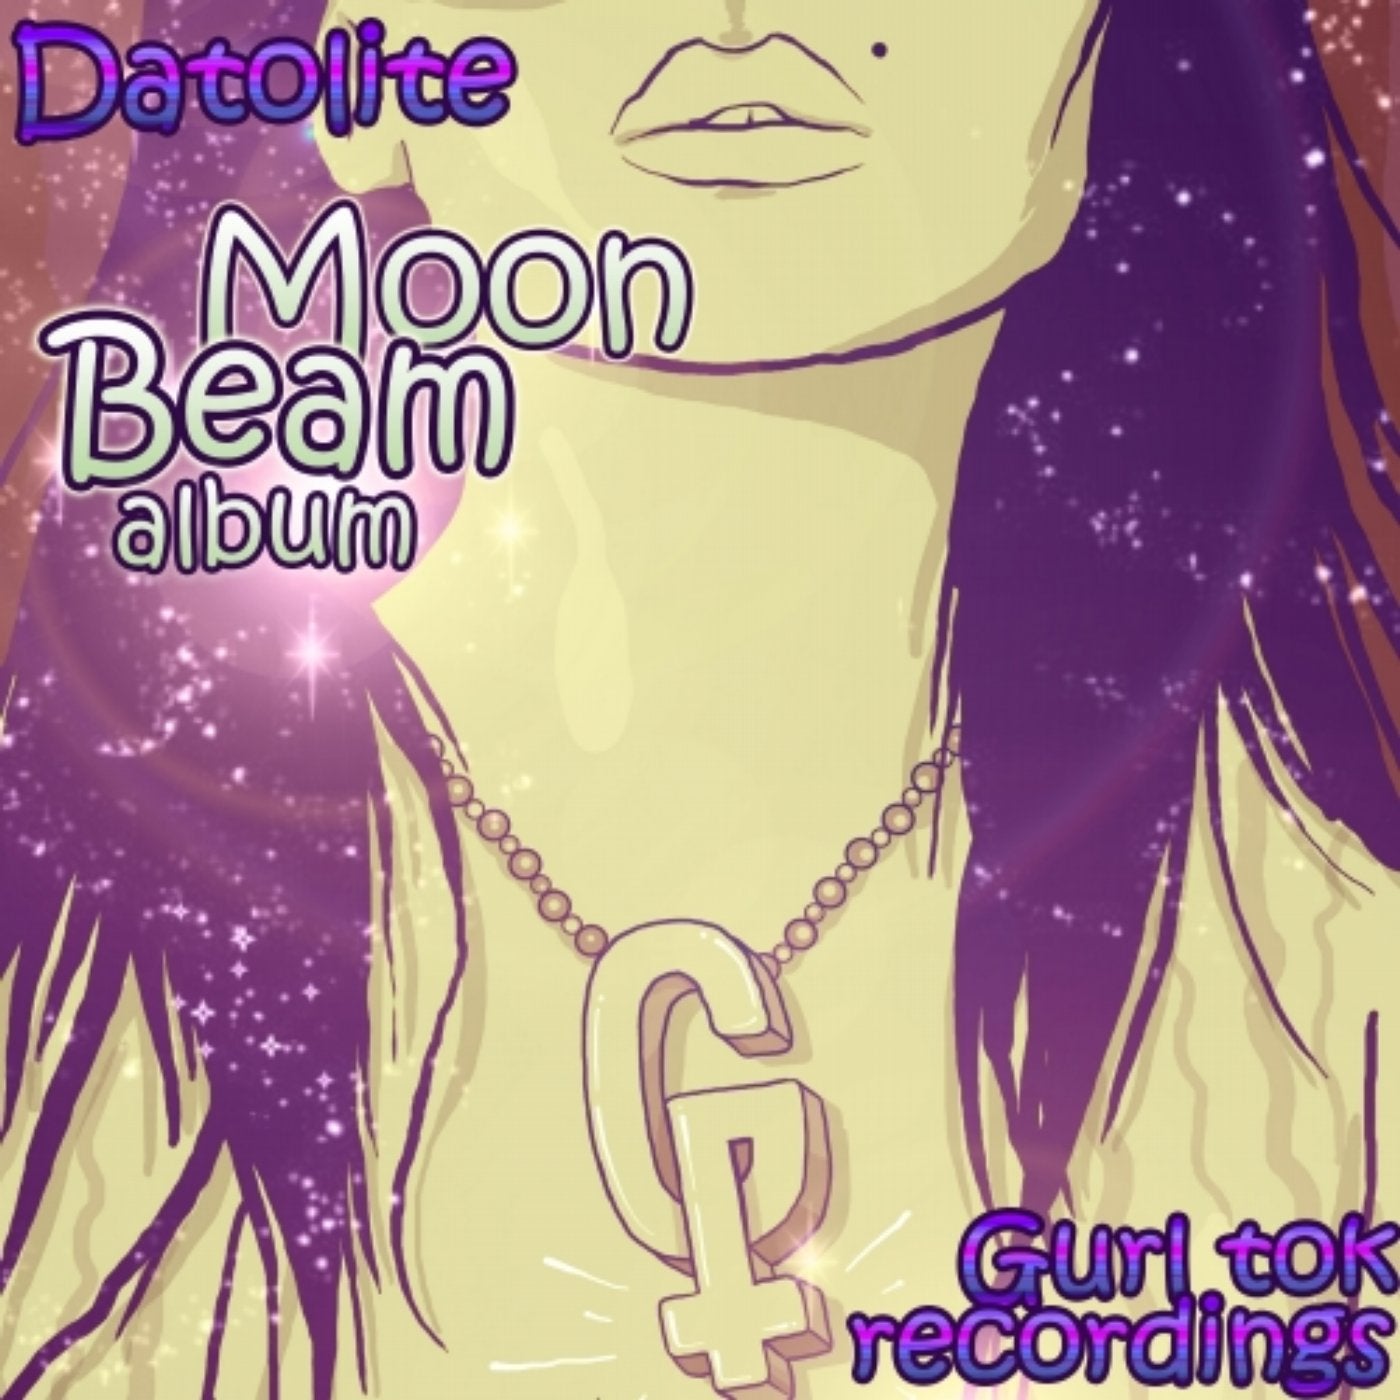 Moon Beam Album